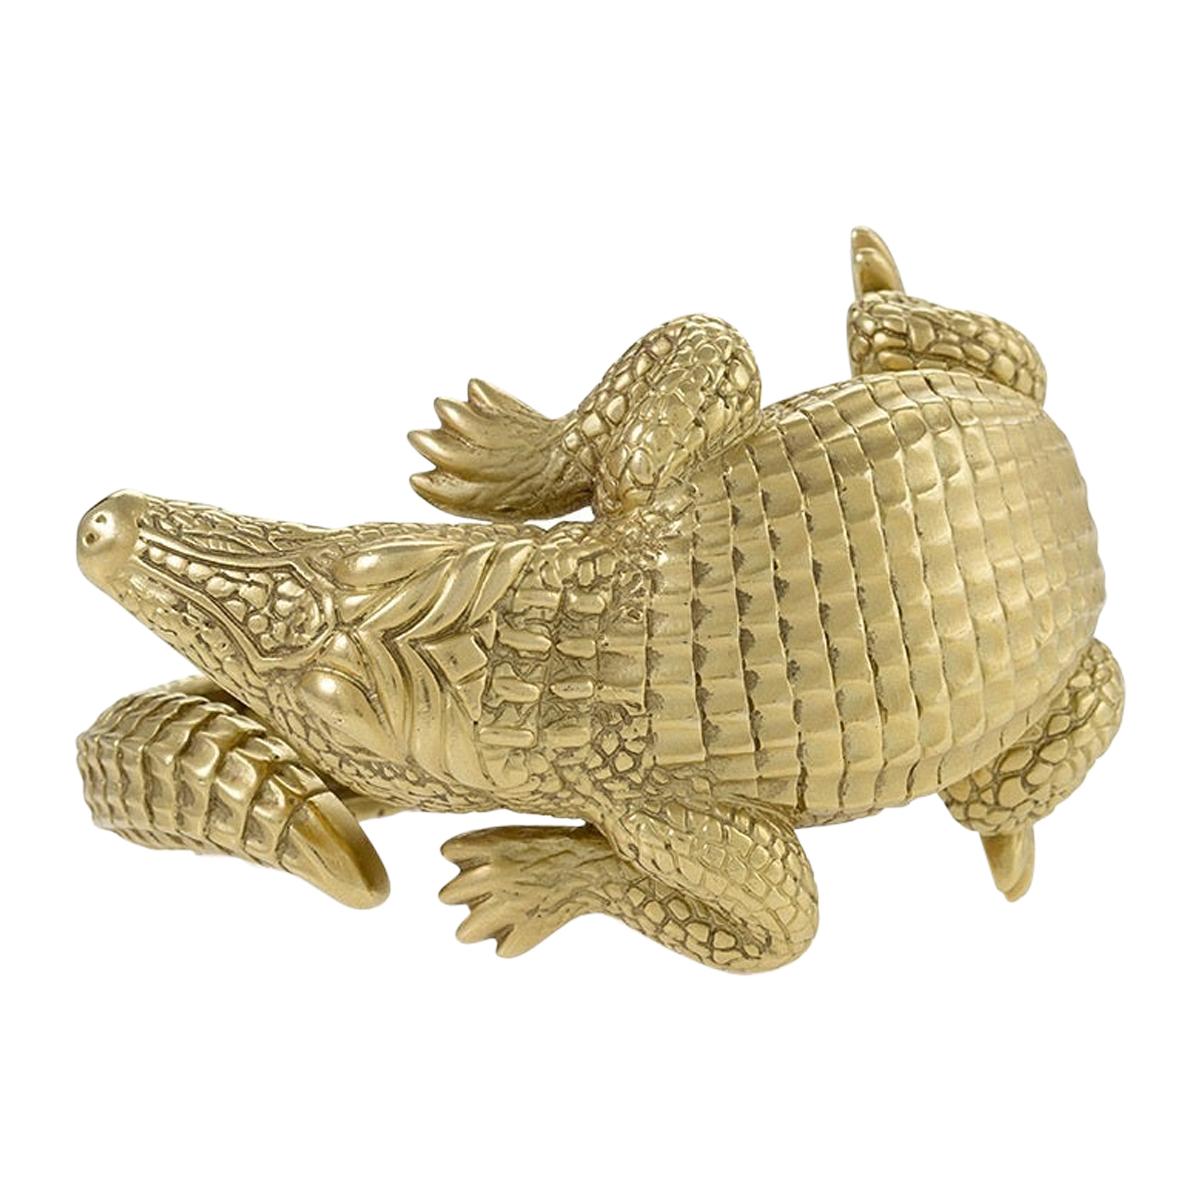 Alligator Bangle Bracelet by Barry Kieselstein-Cord